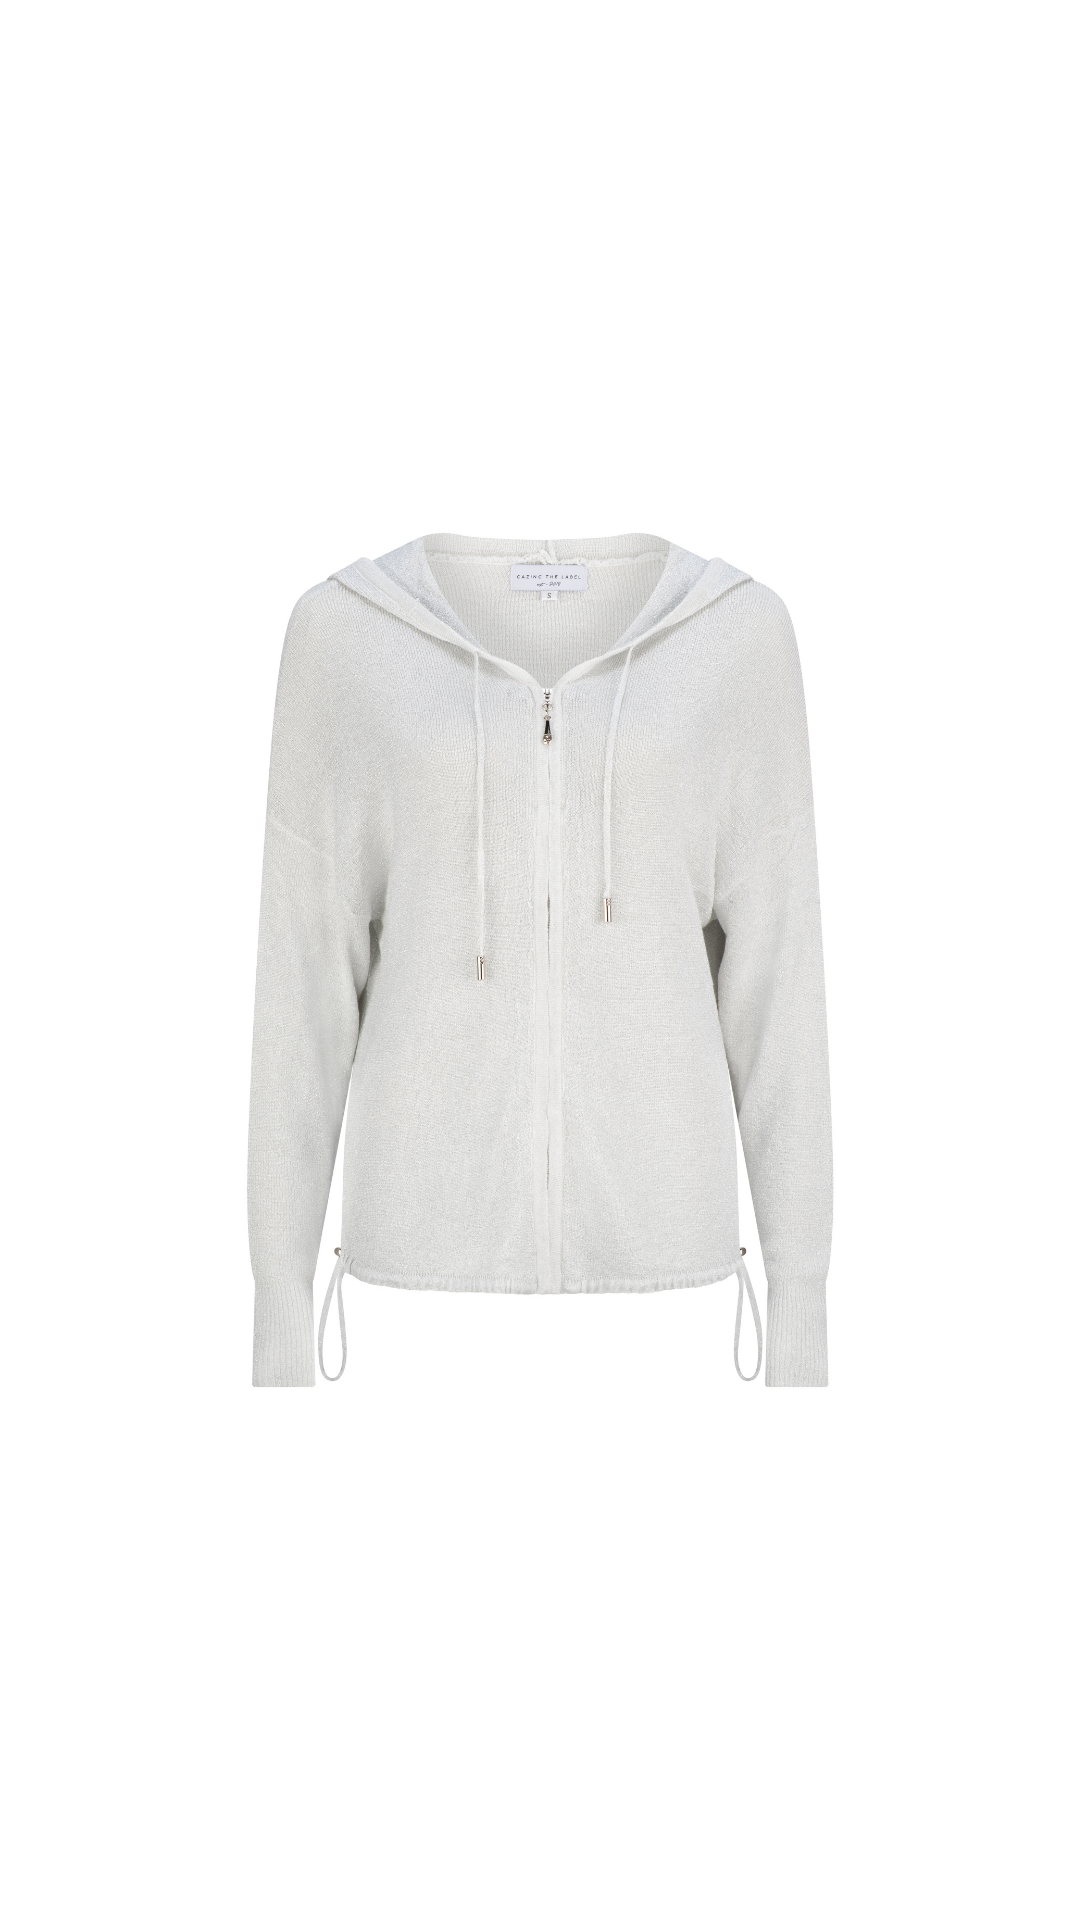 Luno Metallic Jacket With Hood - White